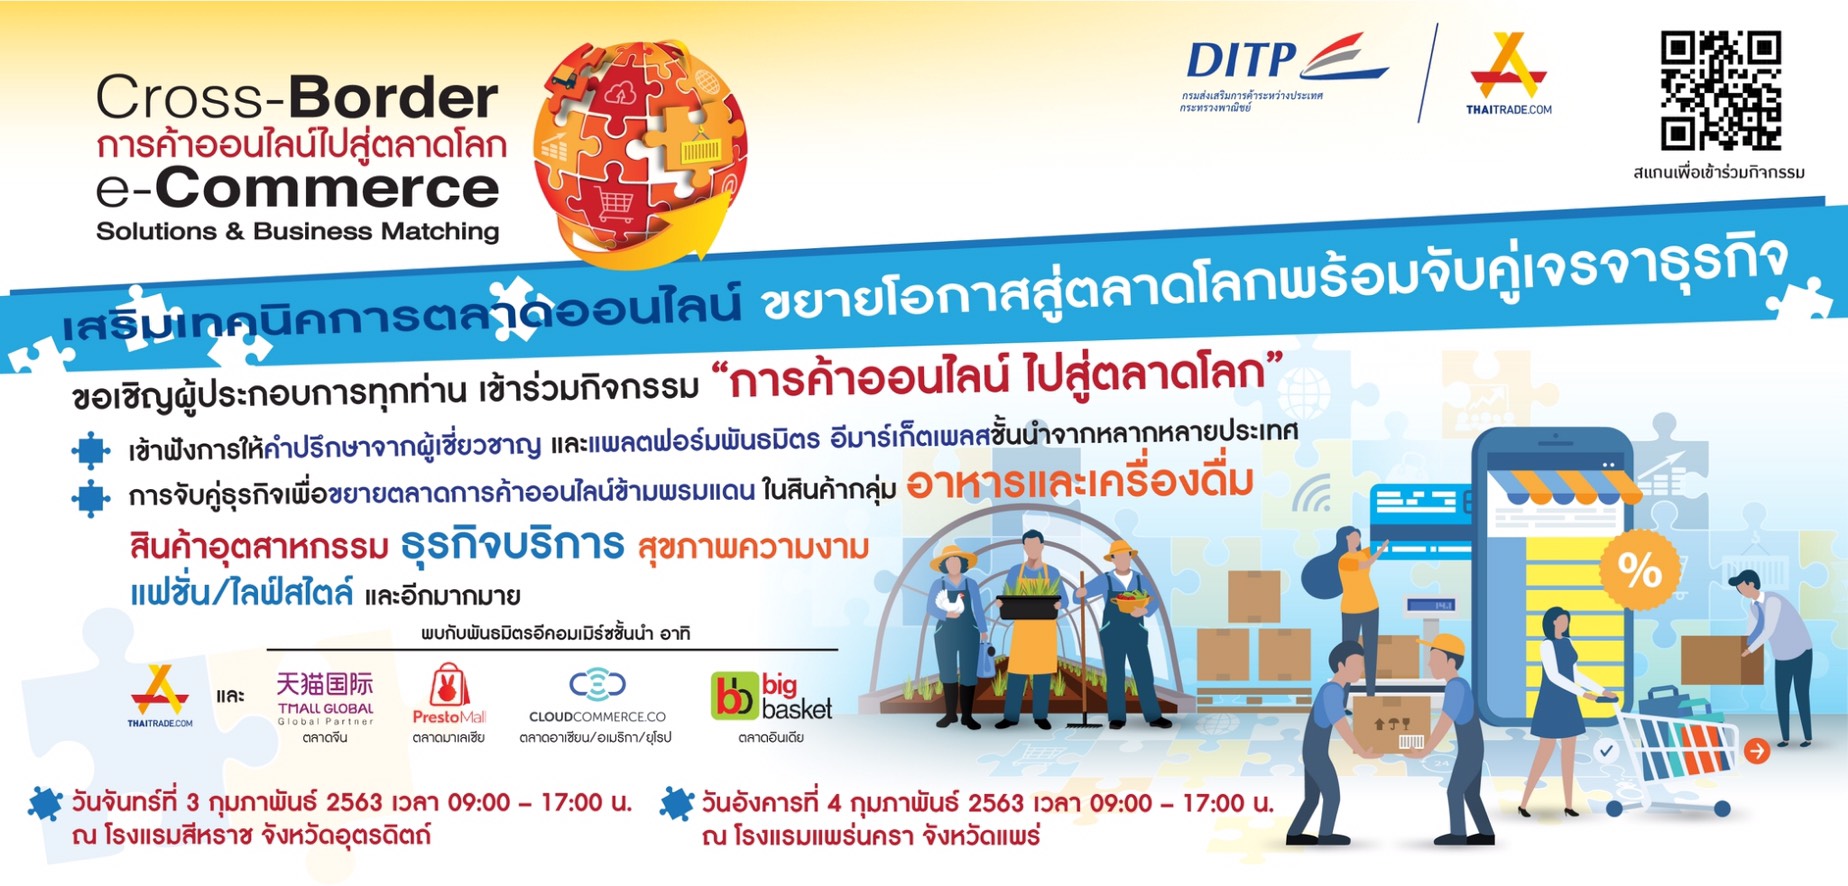 เสริมเทคนิคการค้าออนไลน์ธุรกิจไปกับ “Cross-Border E-Commerce Solutions &  Business Matching” - Chiang Mai News